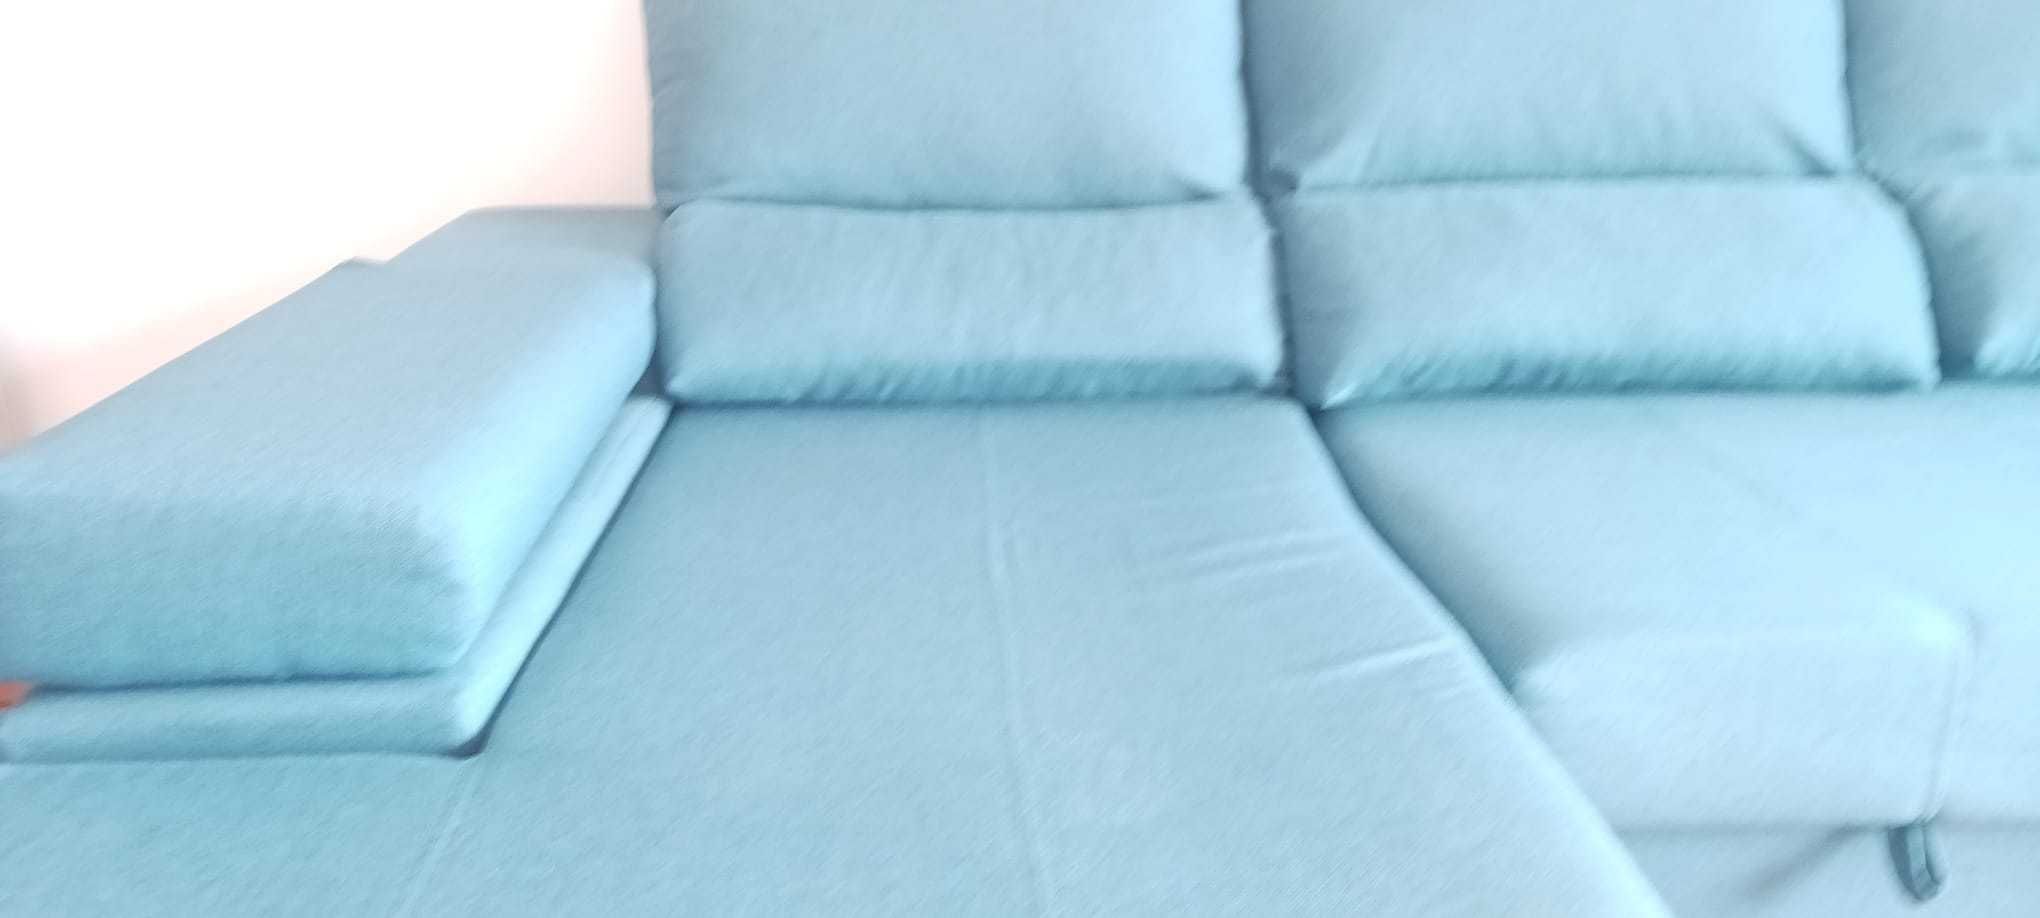 Por motivo de mudança pouco uso como novo sofá cama CARLA Conforama